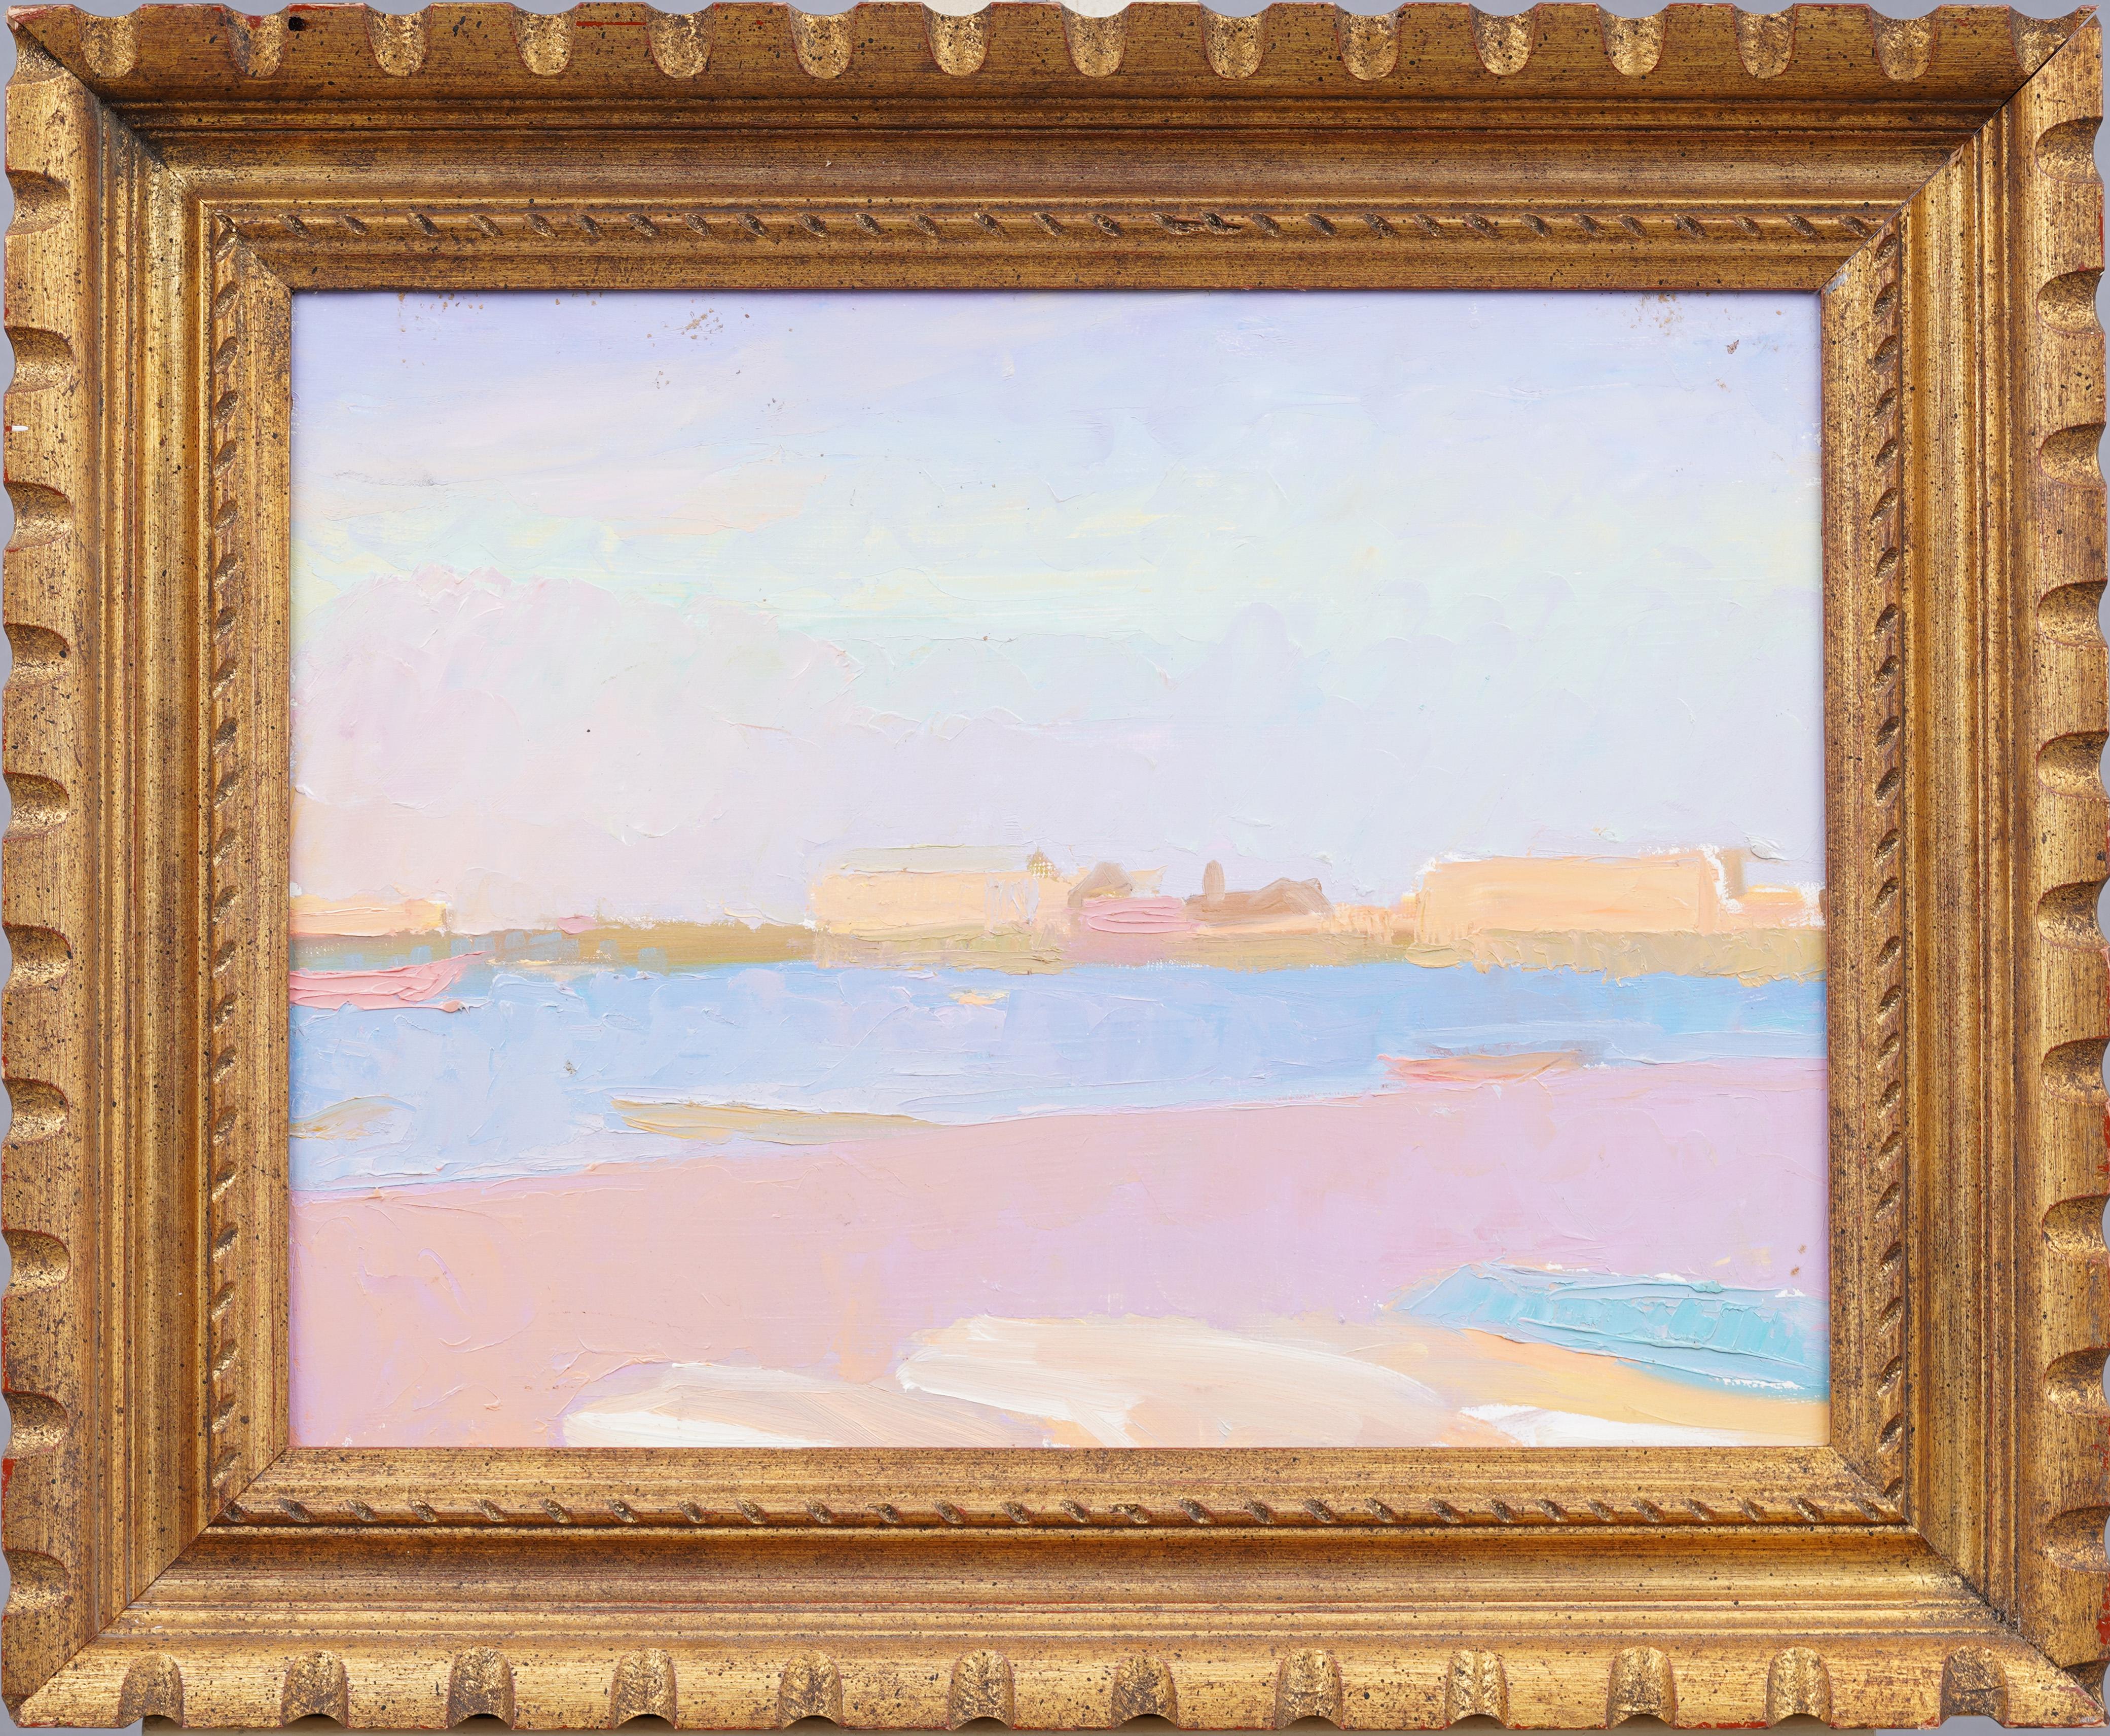 Abstract Painting Unknown - Ancienne peinture à l'huile américaine moderniste représentant une scène de plage d'été encadrée des Hamptons